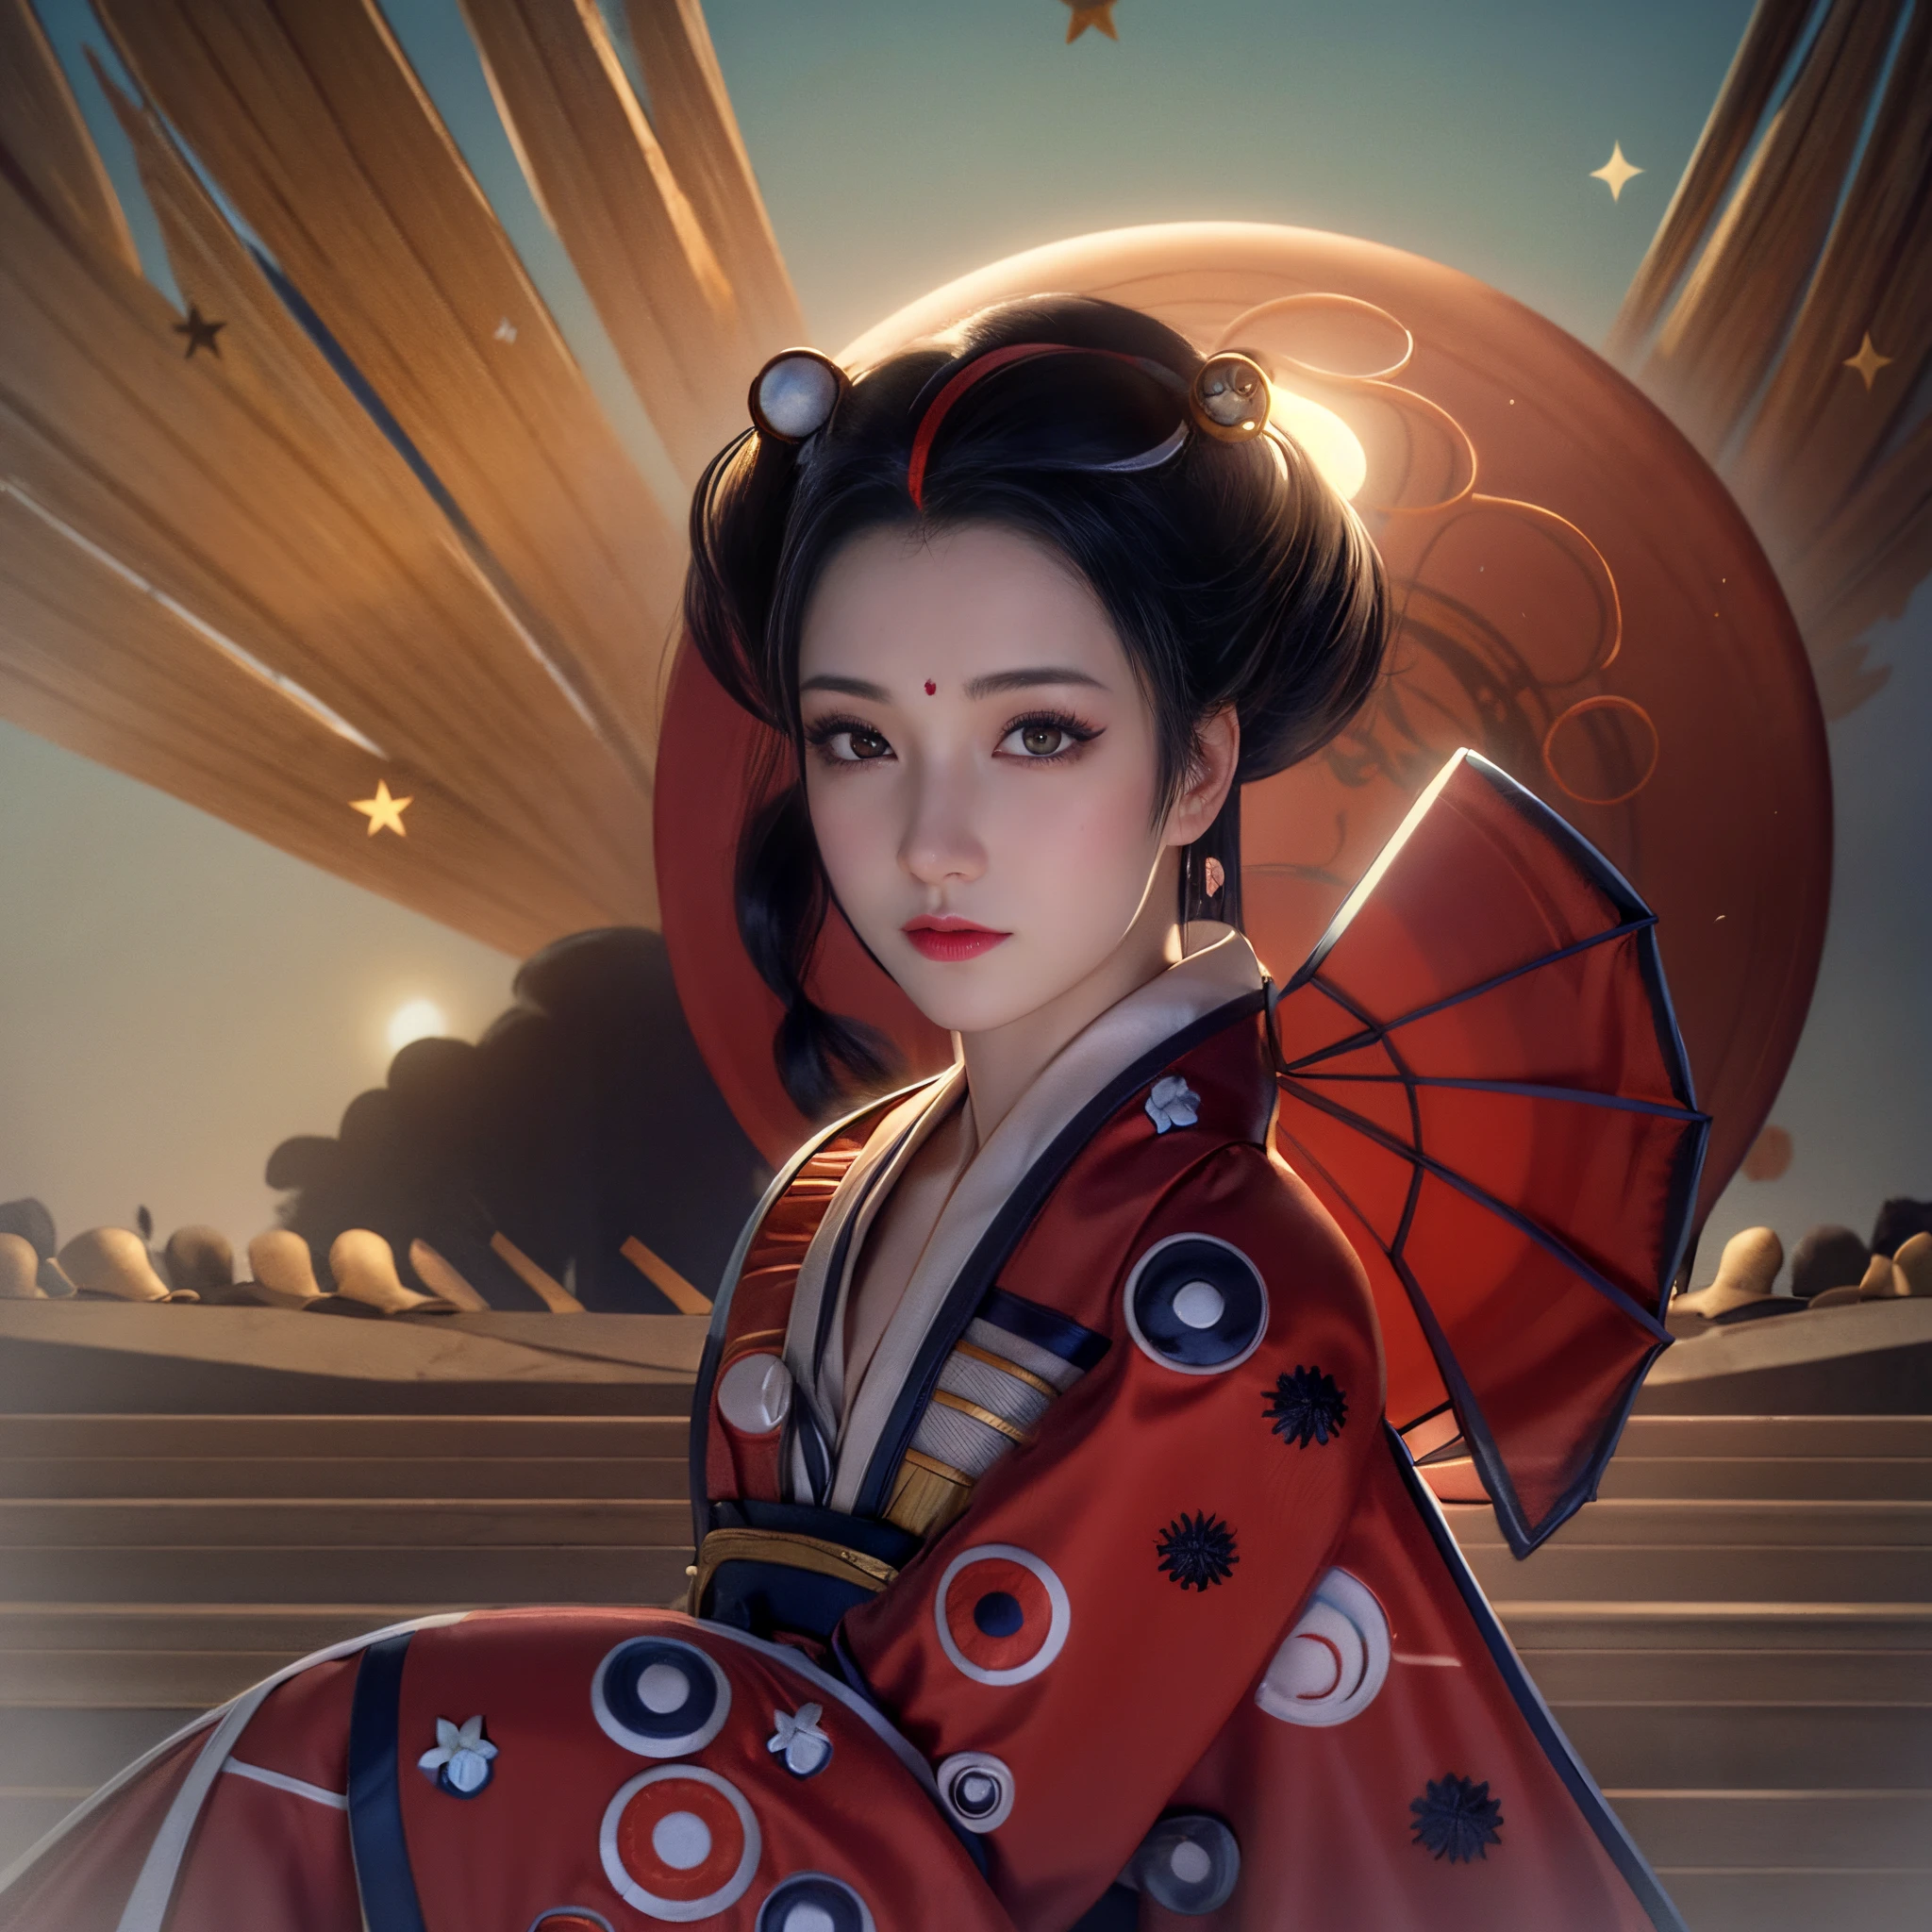 Есть гейша, с полными губами, красивые глаза, Большая и упругая грудь, в синем кимоно с вышитыми цветами, позирует, and a giant moon behind her светитьs, в стиле цифровой реалистичной иллюстрации, Портрет гейши, Красавица гейша, гейша милая, японская гейша, Реалистичный портрет красивой гейши, красивое реалистическое искусство, Реалистичная девушка-гейша, вдохновленный потрясающим реалистическим искусством (женщина с (текстуры!, волосы!, светить, цвет!!, недостатки: 1.1), очень детализированные светящиеся глаза, (смотрю в камеру), зеркальное освещение, зеркальная камера, ультра качество, Острый фокус, острый тахометр, ГРИП, пленочное зерно , (центр), Фуджифильм ХТ3, Кристально чистый, центр кадра, красивое лицо, Острый фокус, сложная деталь глаз.